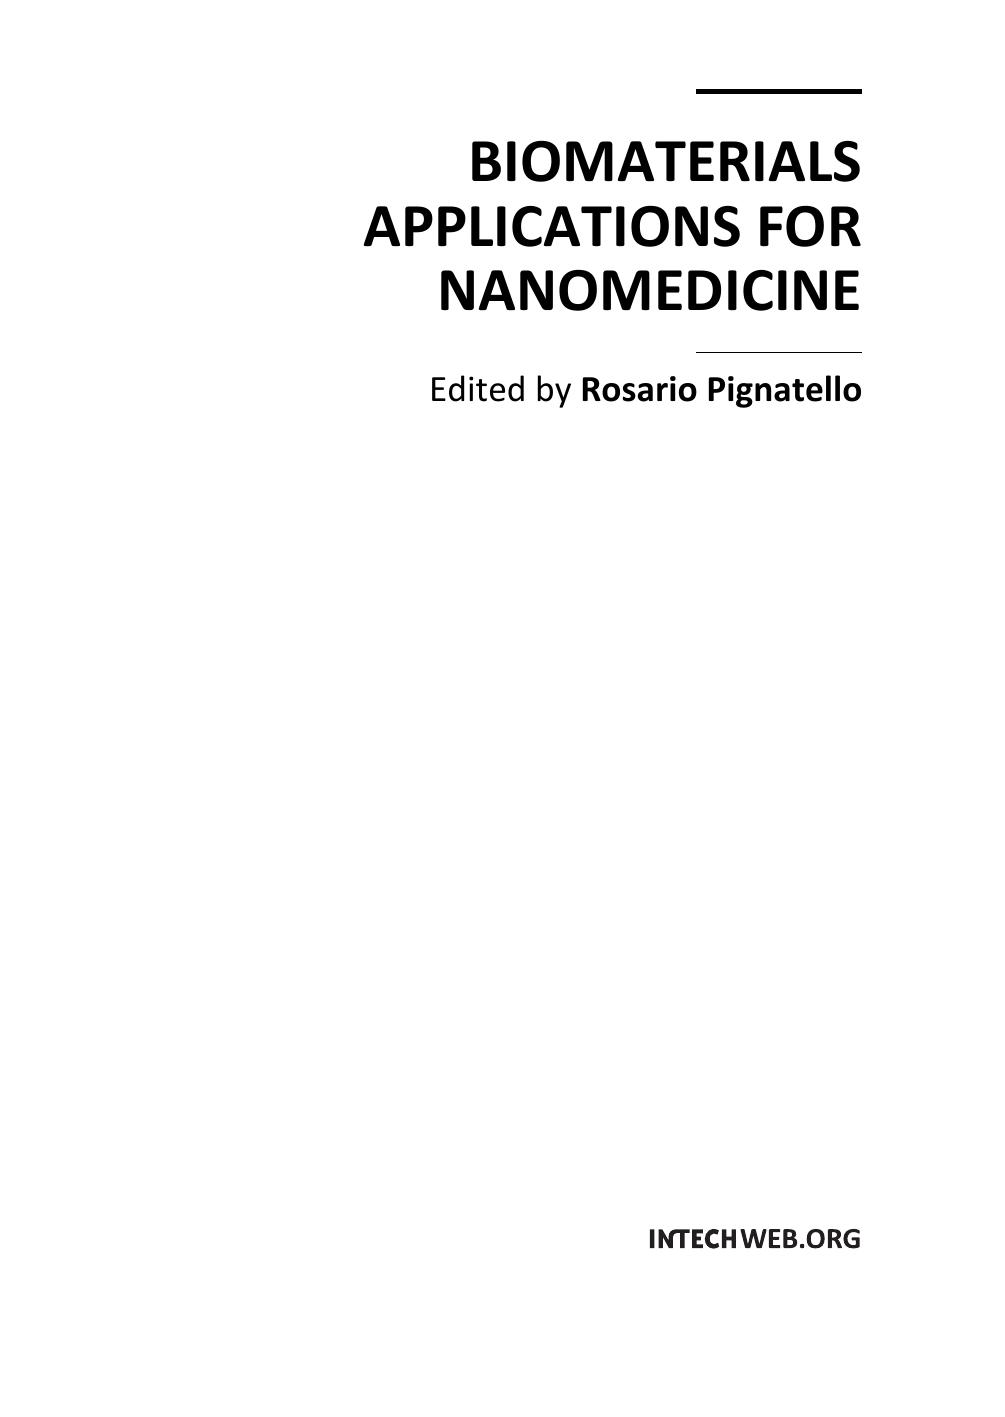 Microsoft Word - preface_ Biomaterials Applications for Nanomedicine